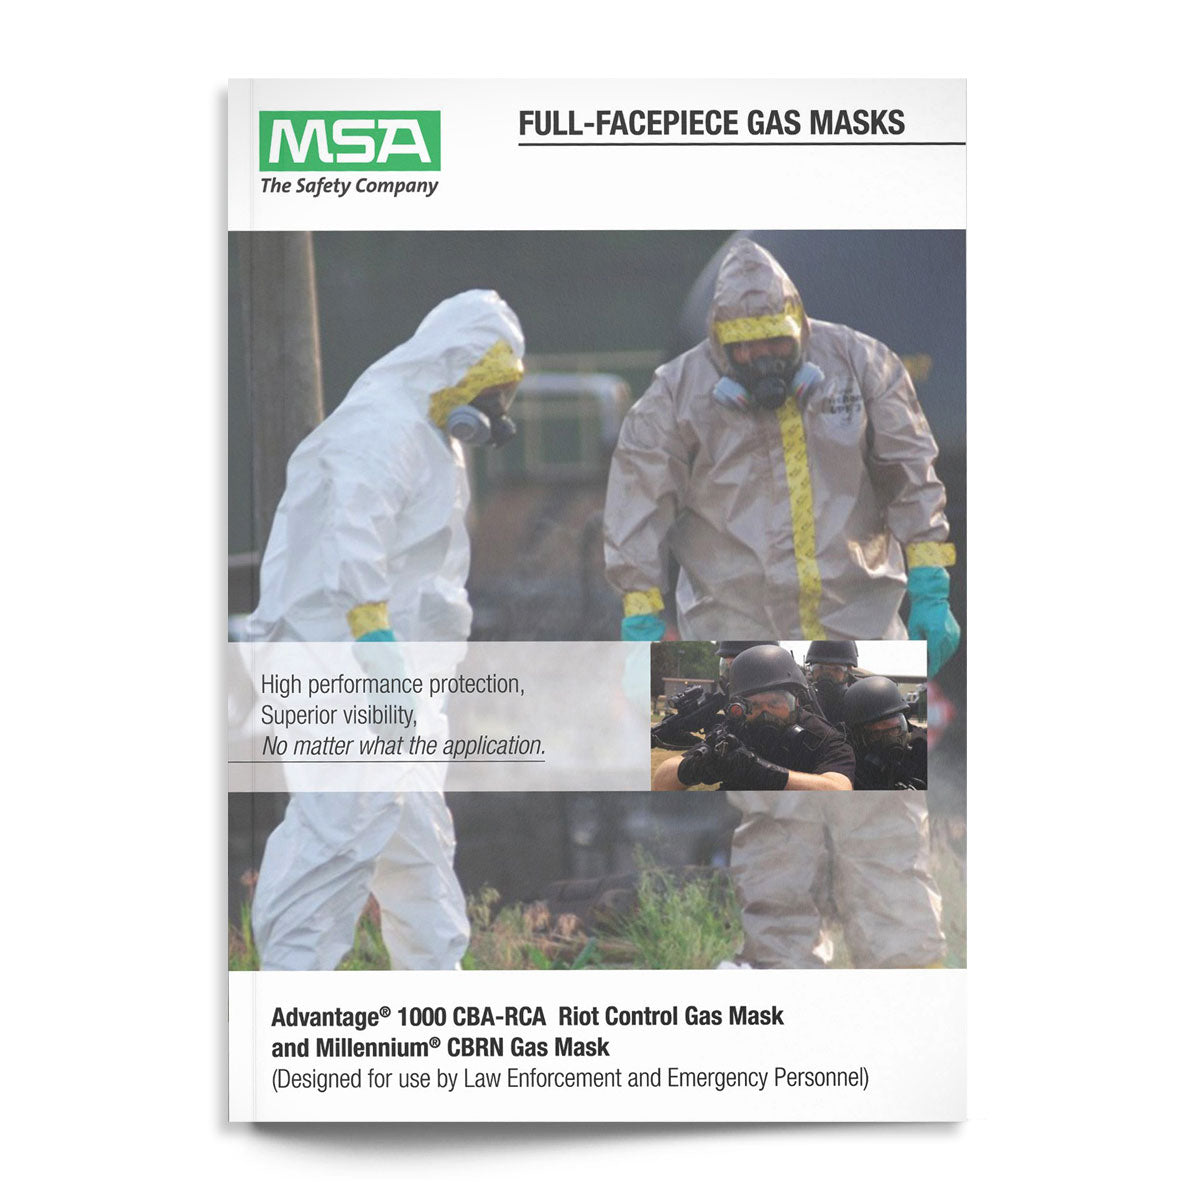 MSA Gas Masks Catalogue Digital Download Catalogue MSA Tactical Gear Supplier Tactical Distributors Australia